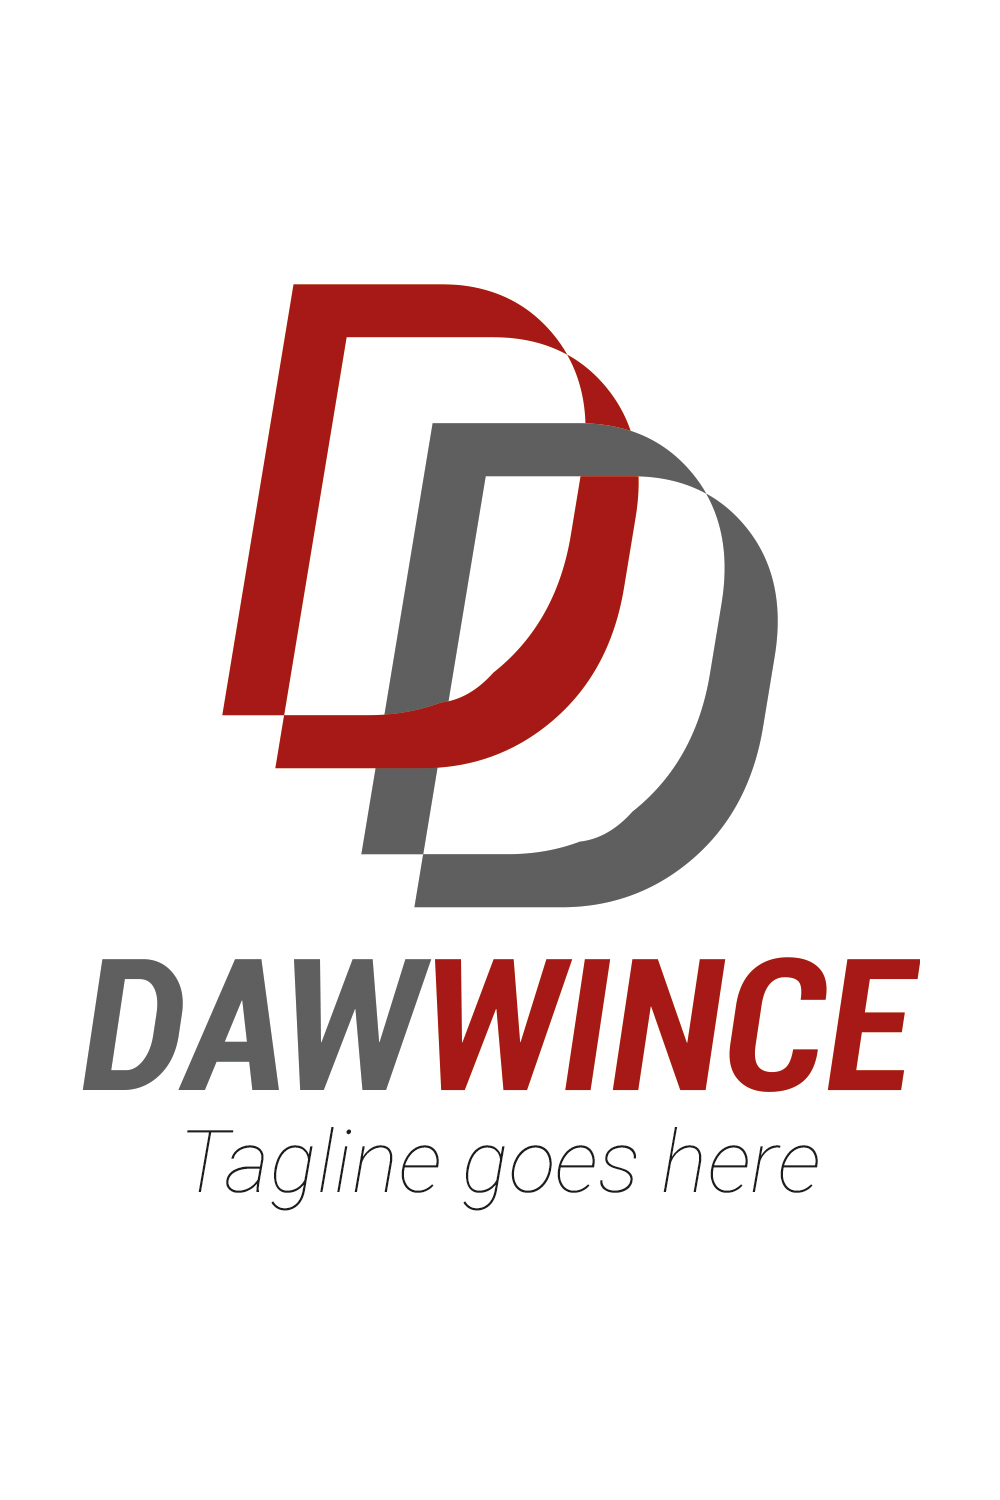 A Unique Letter D Tech Logo Design pinterest image.